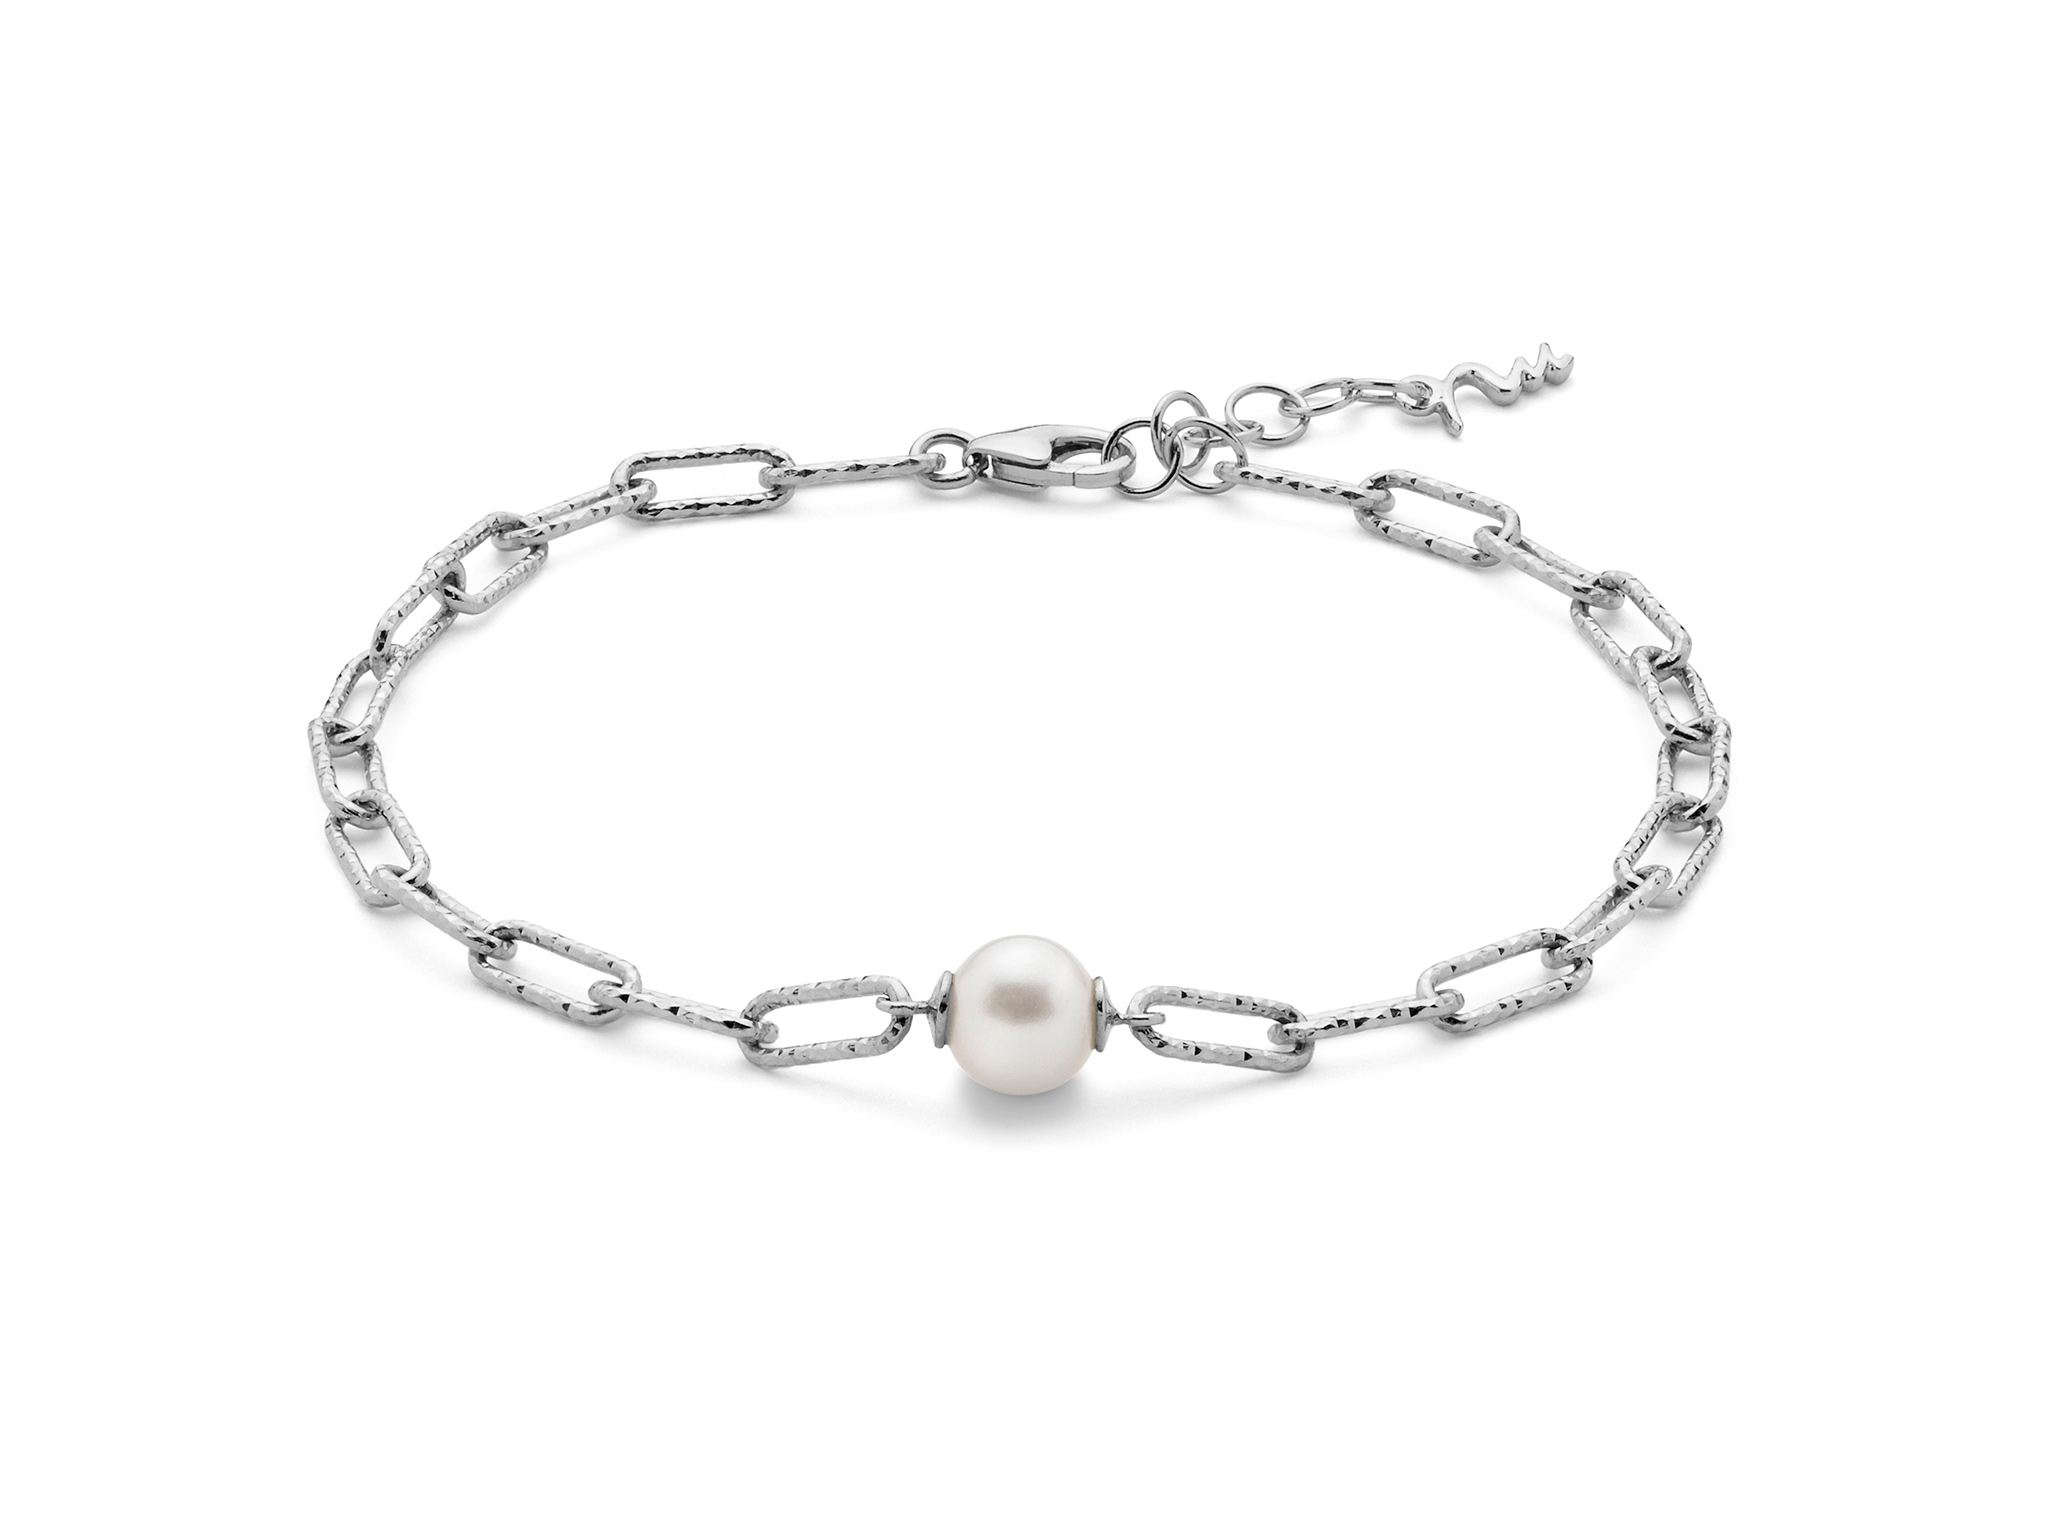 Bracciale con catena a maglia piccola, in argento con perla. - PBR3140G